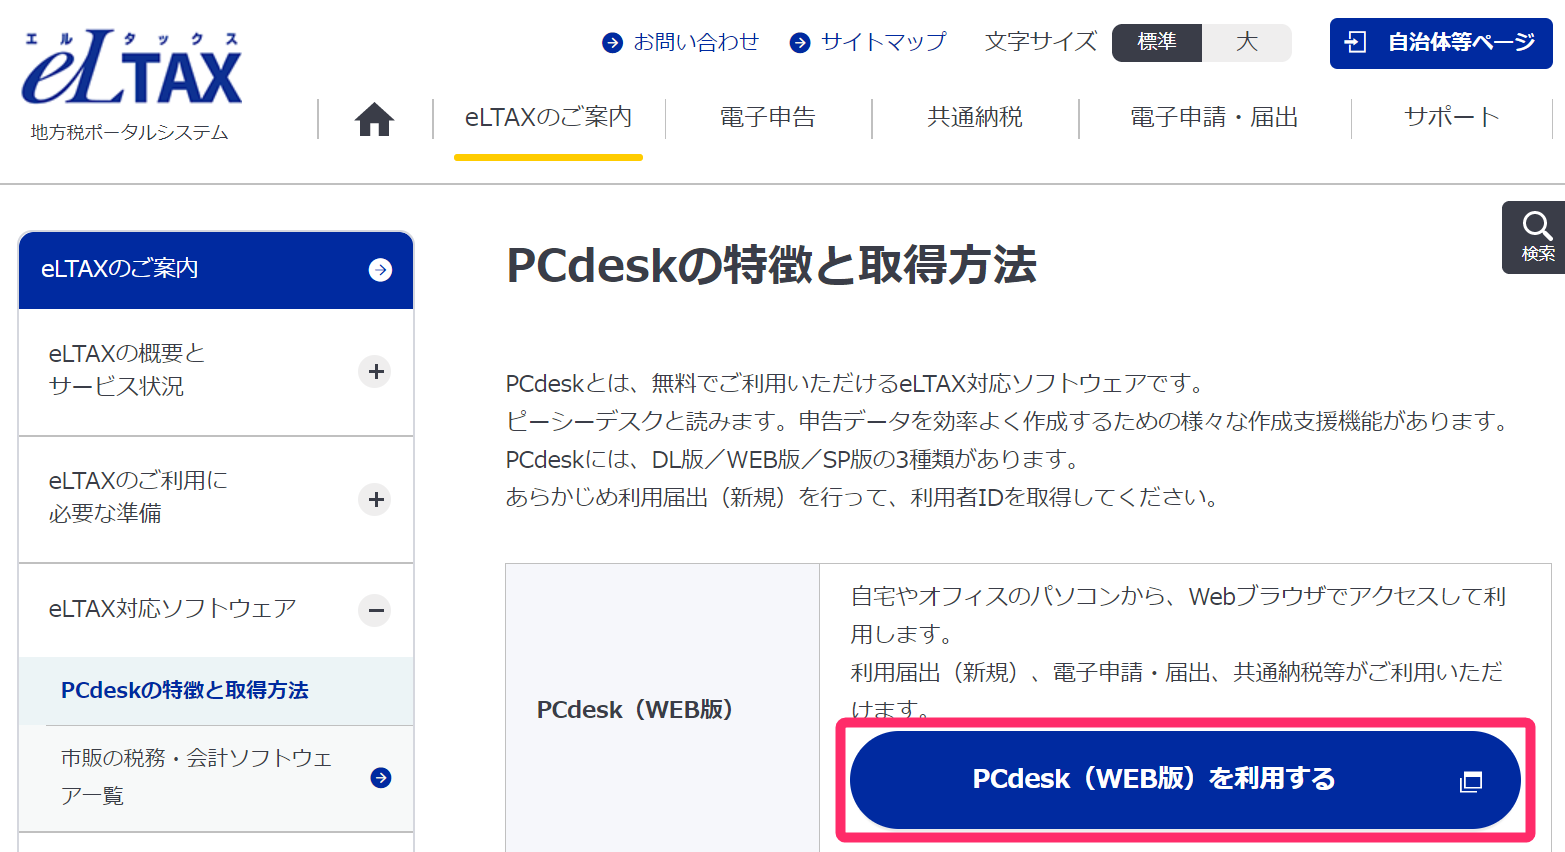 eLTAX：「PCdeskの特徴と取得方法」画面にて、［PCdesk（WEB版）を利用する］ボタンを指し示しているスクリーンショット